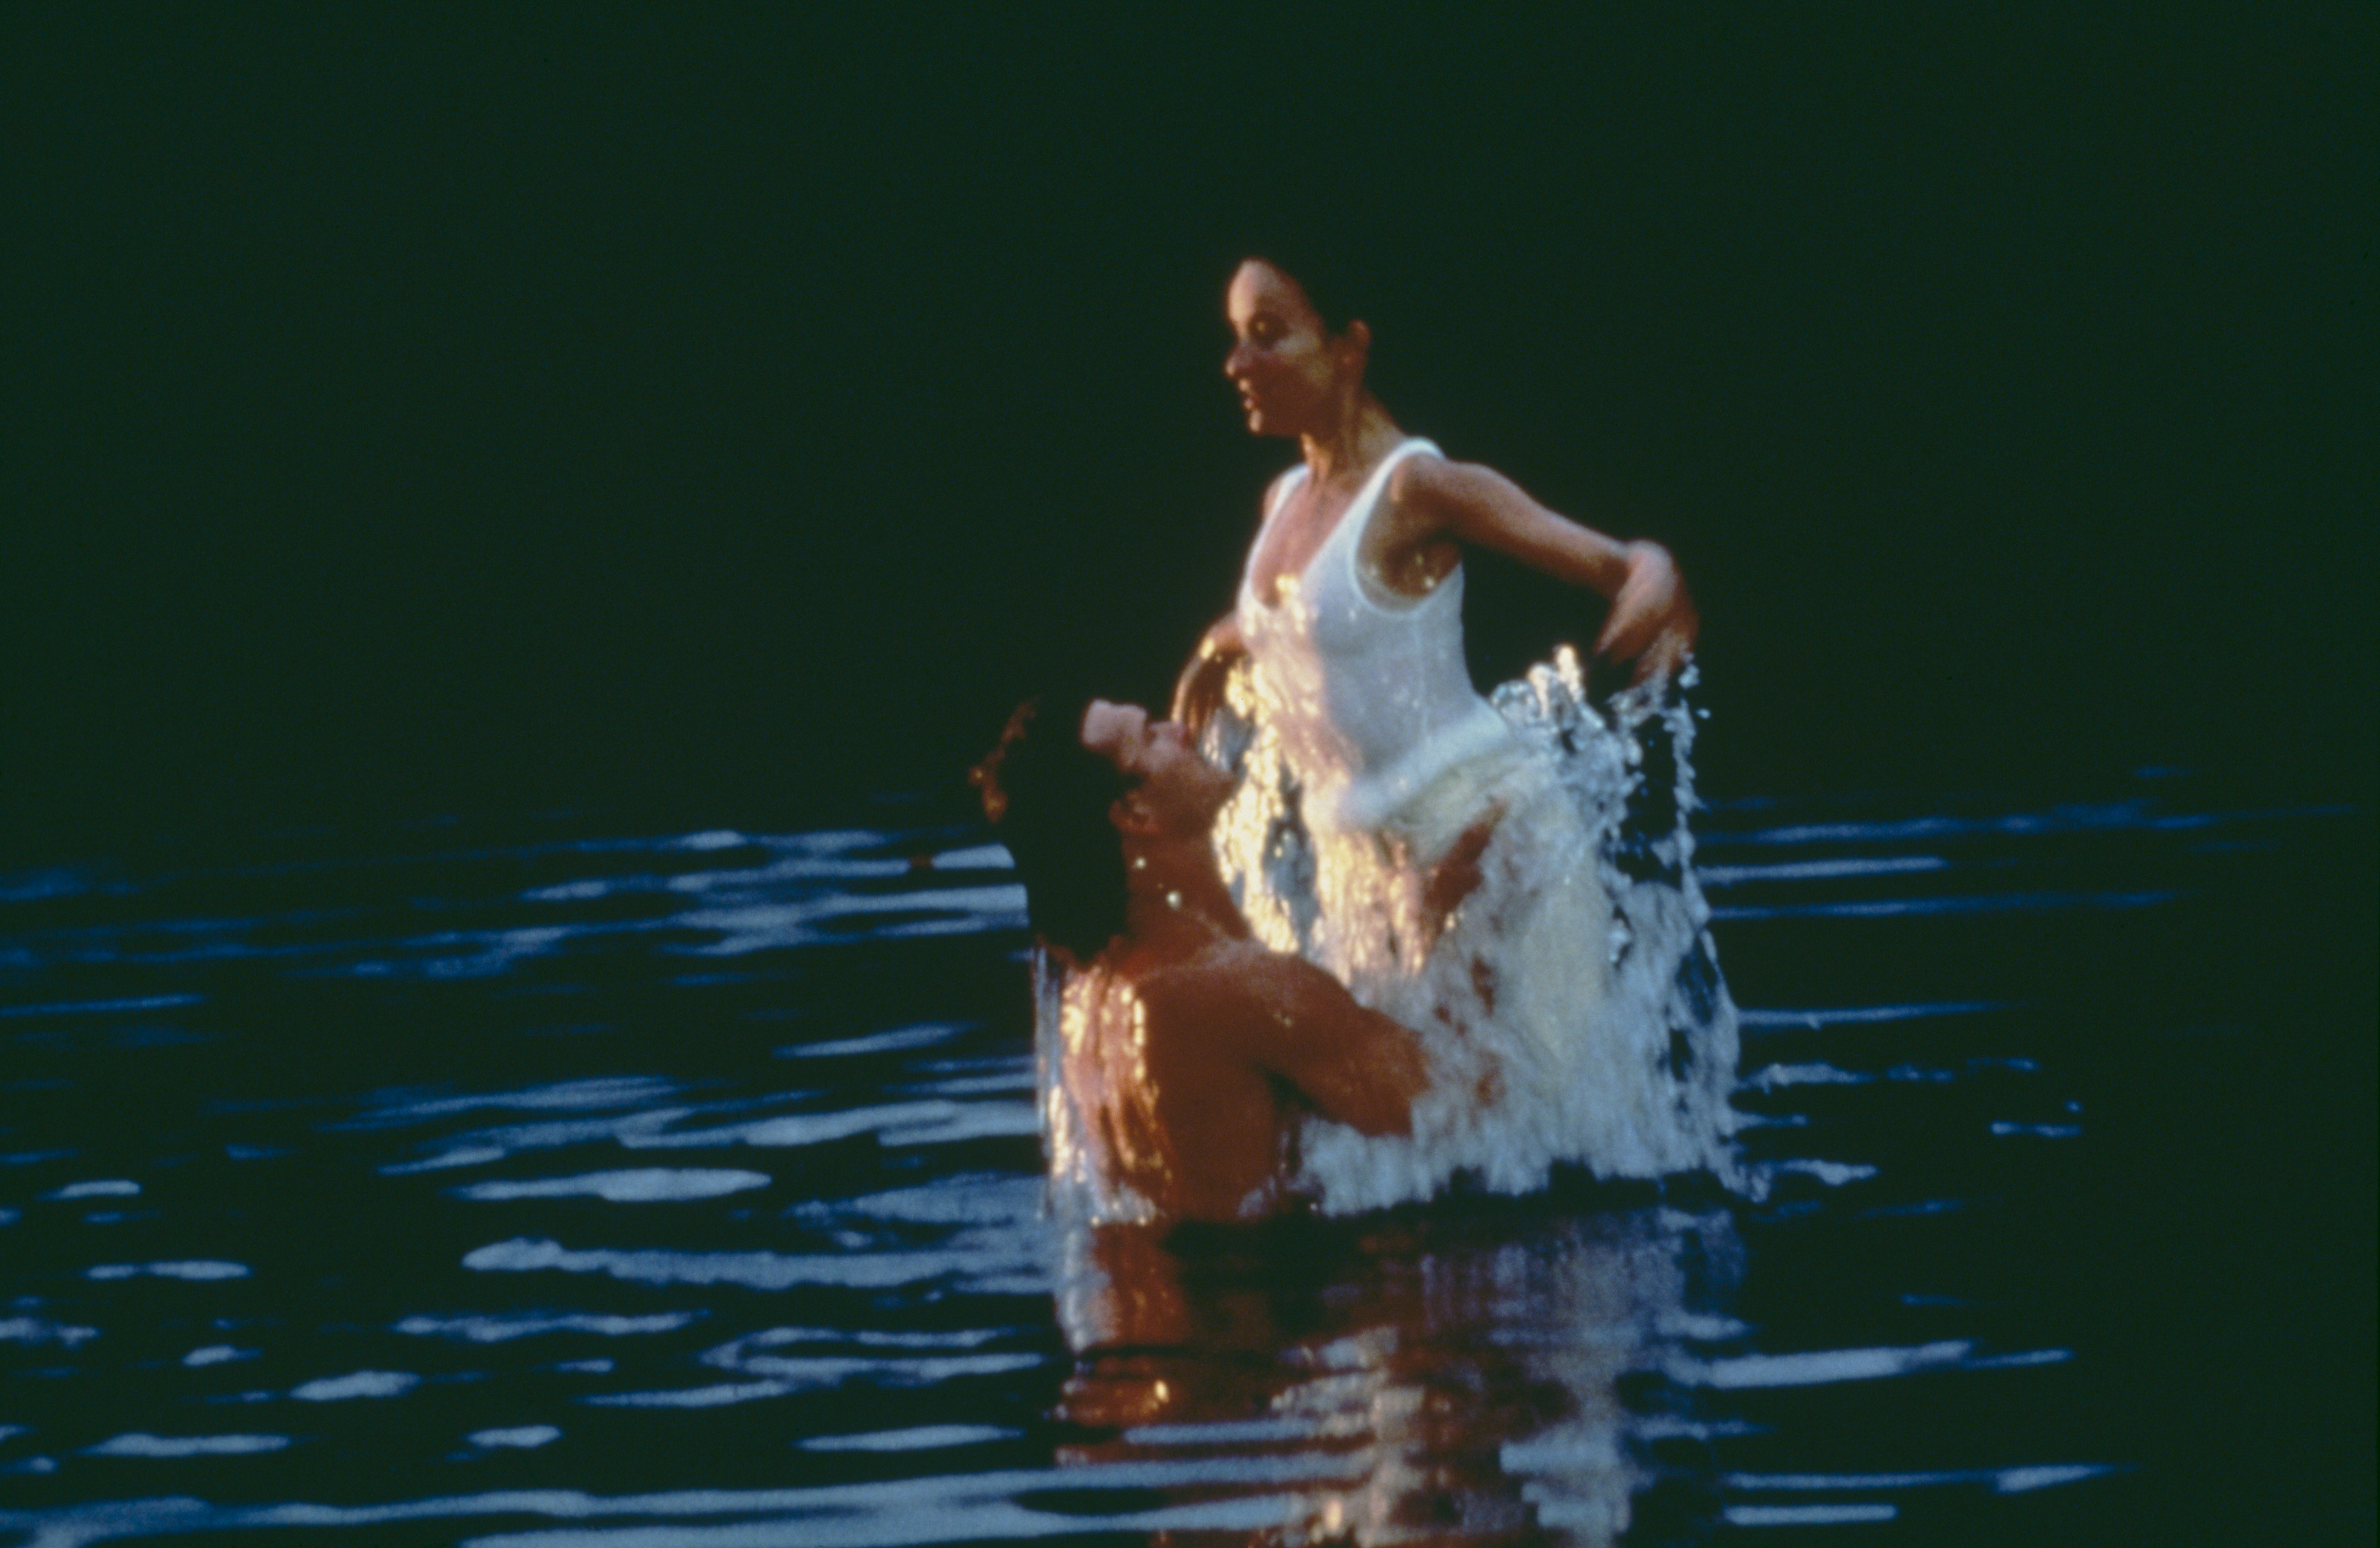 Patrick Swayze et Jennifer Grey sur le tournage de "Dirty Dancing", 1987 | Source : Getty Images